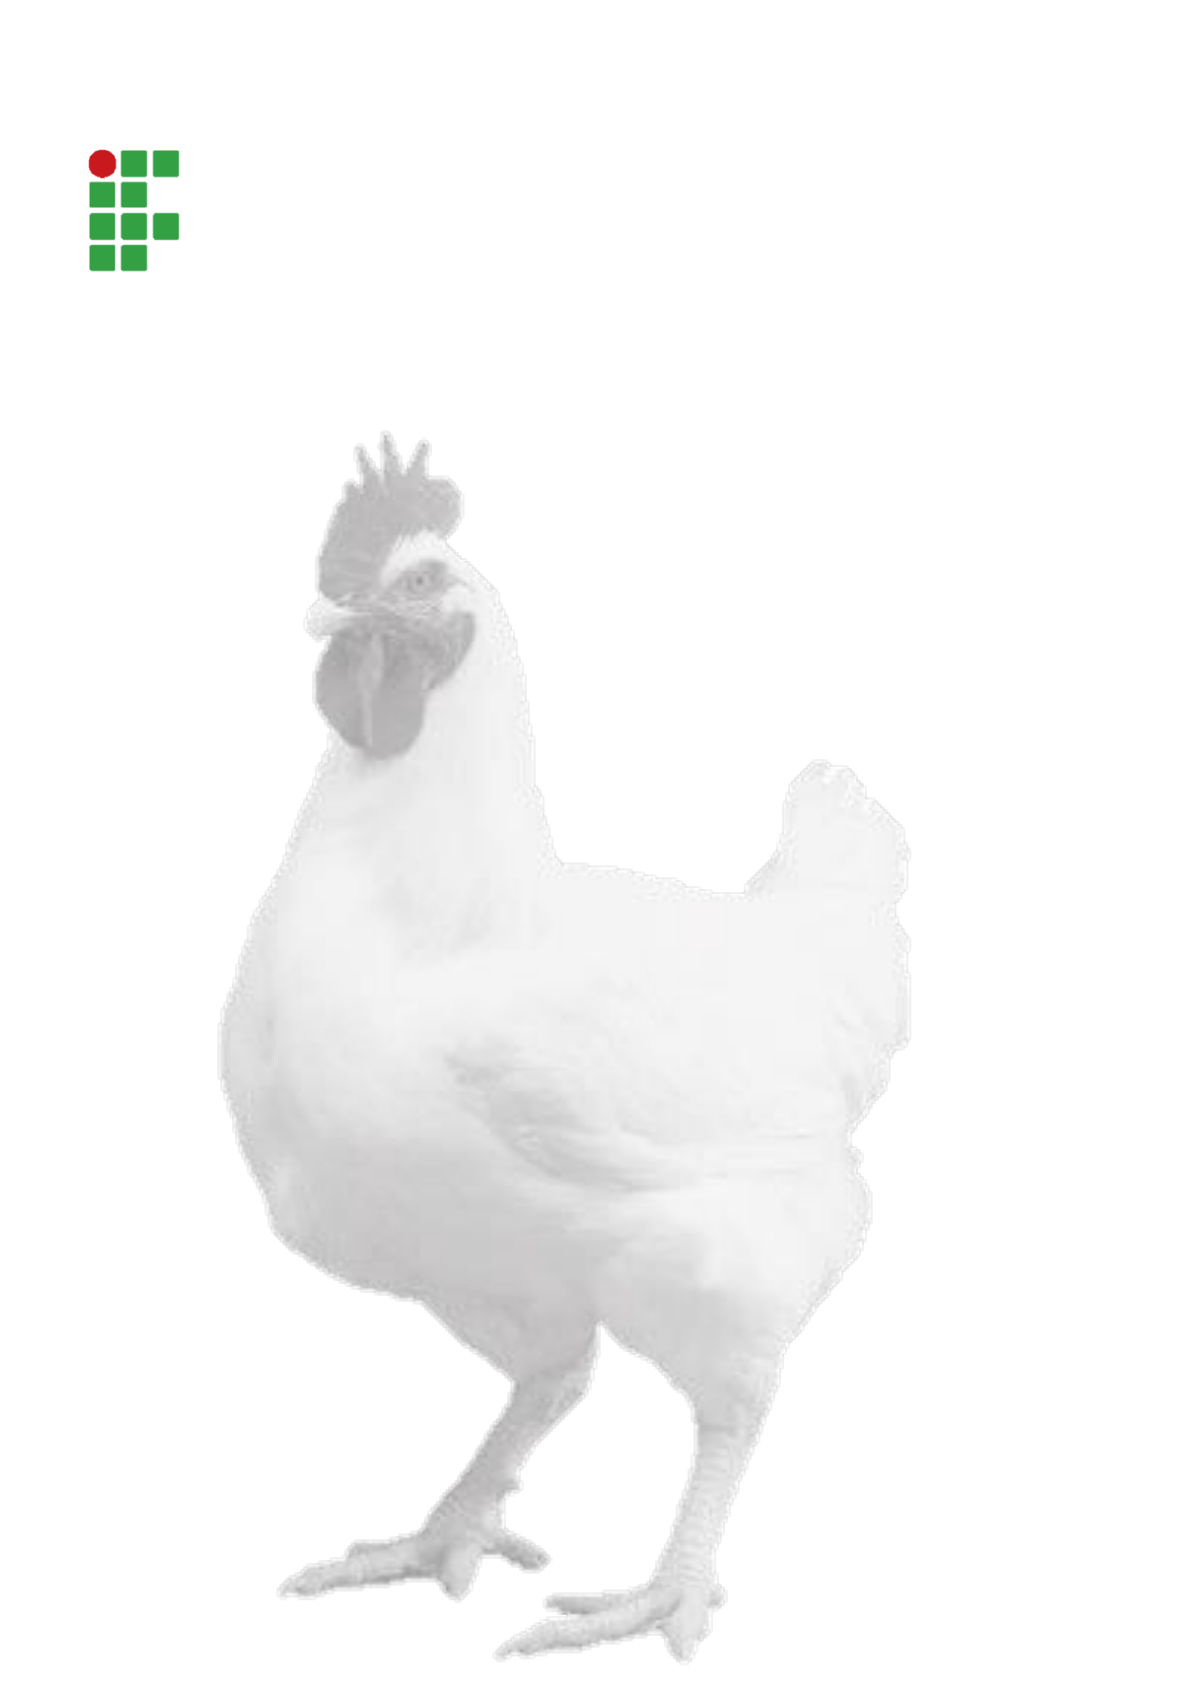 Afinal, frangos usam hormônios? Confira!